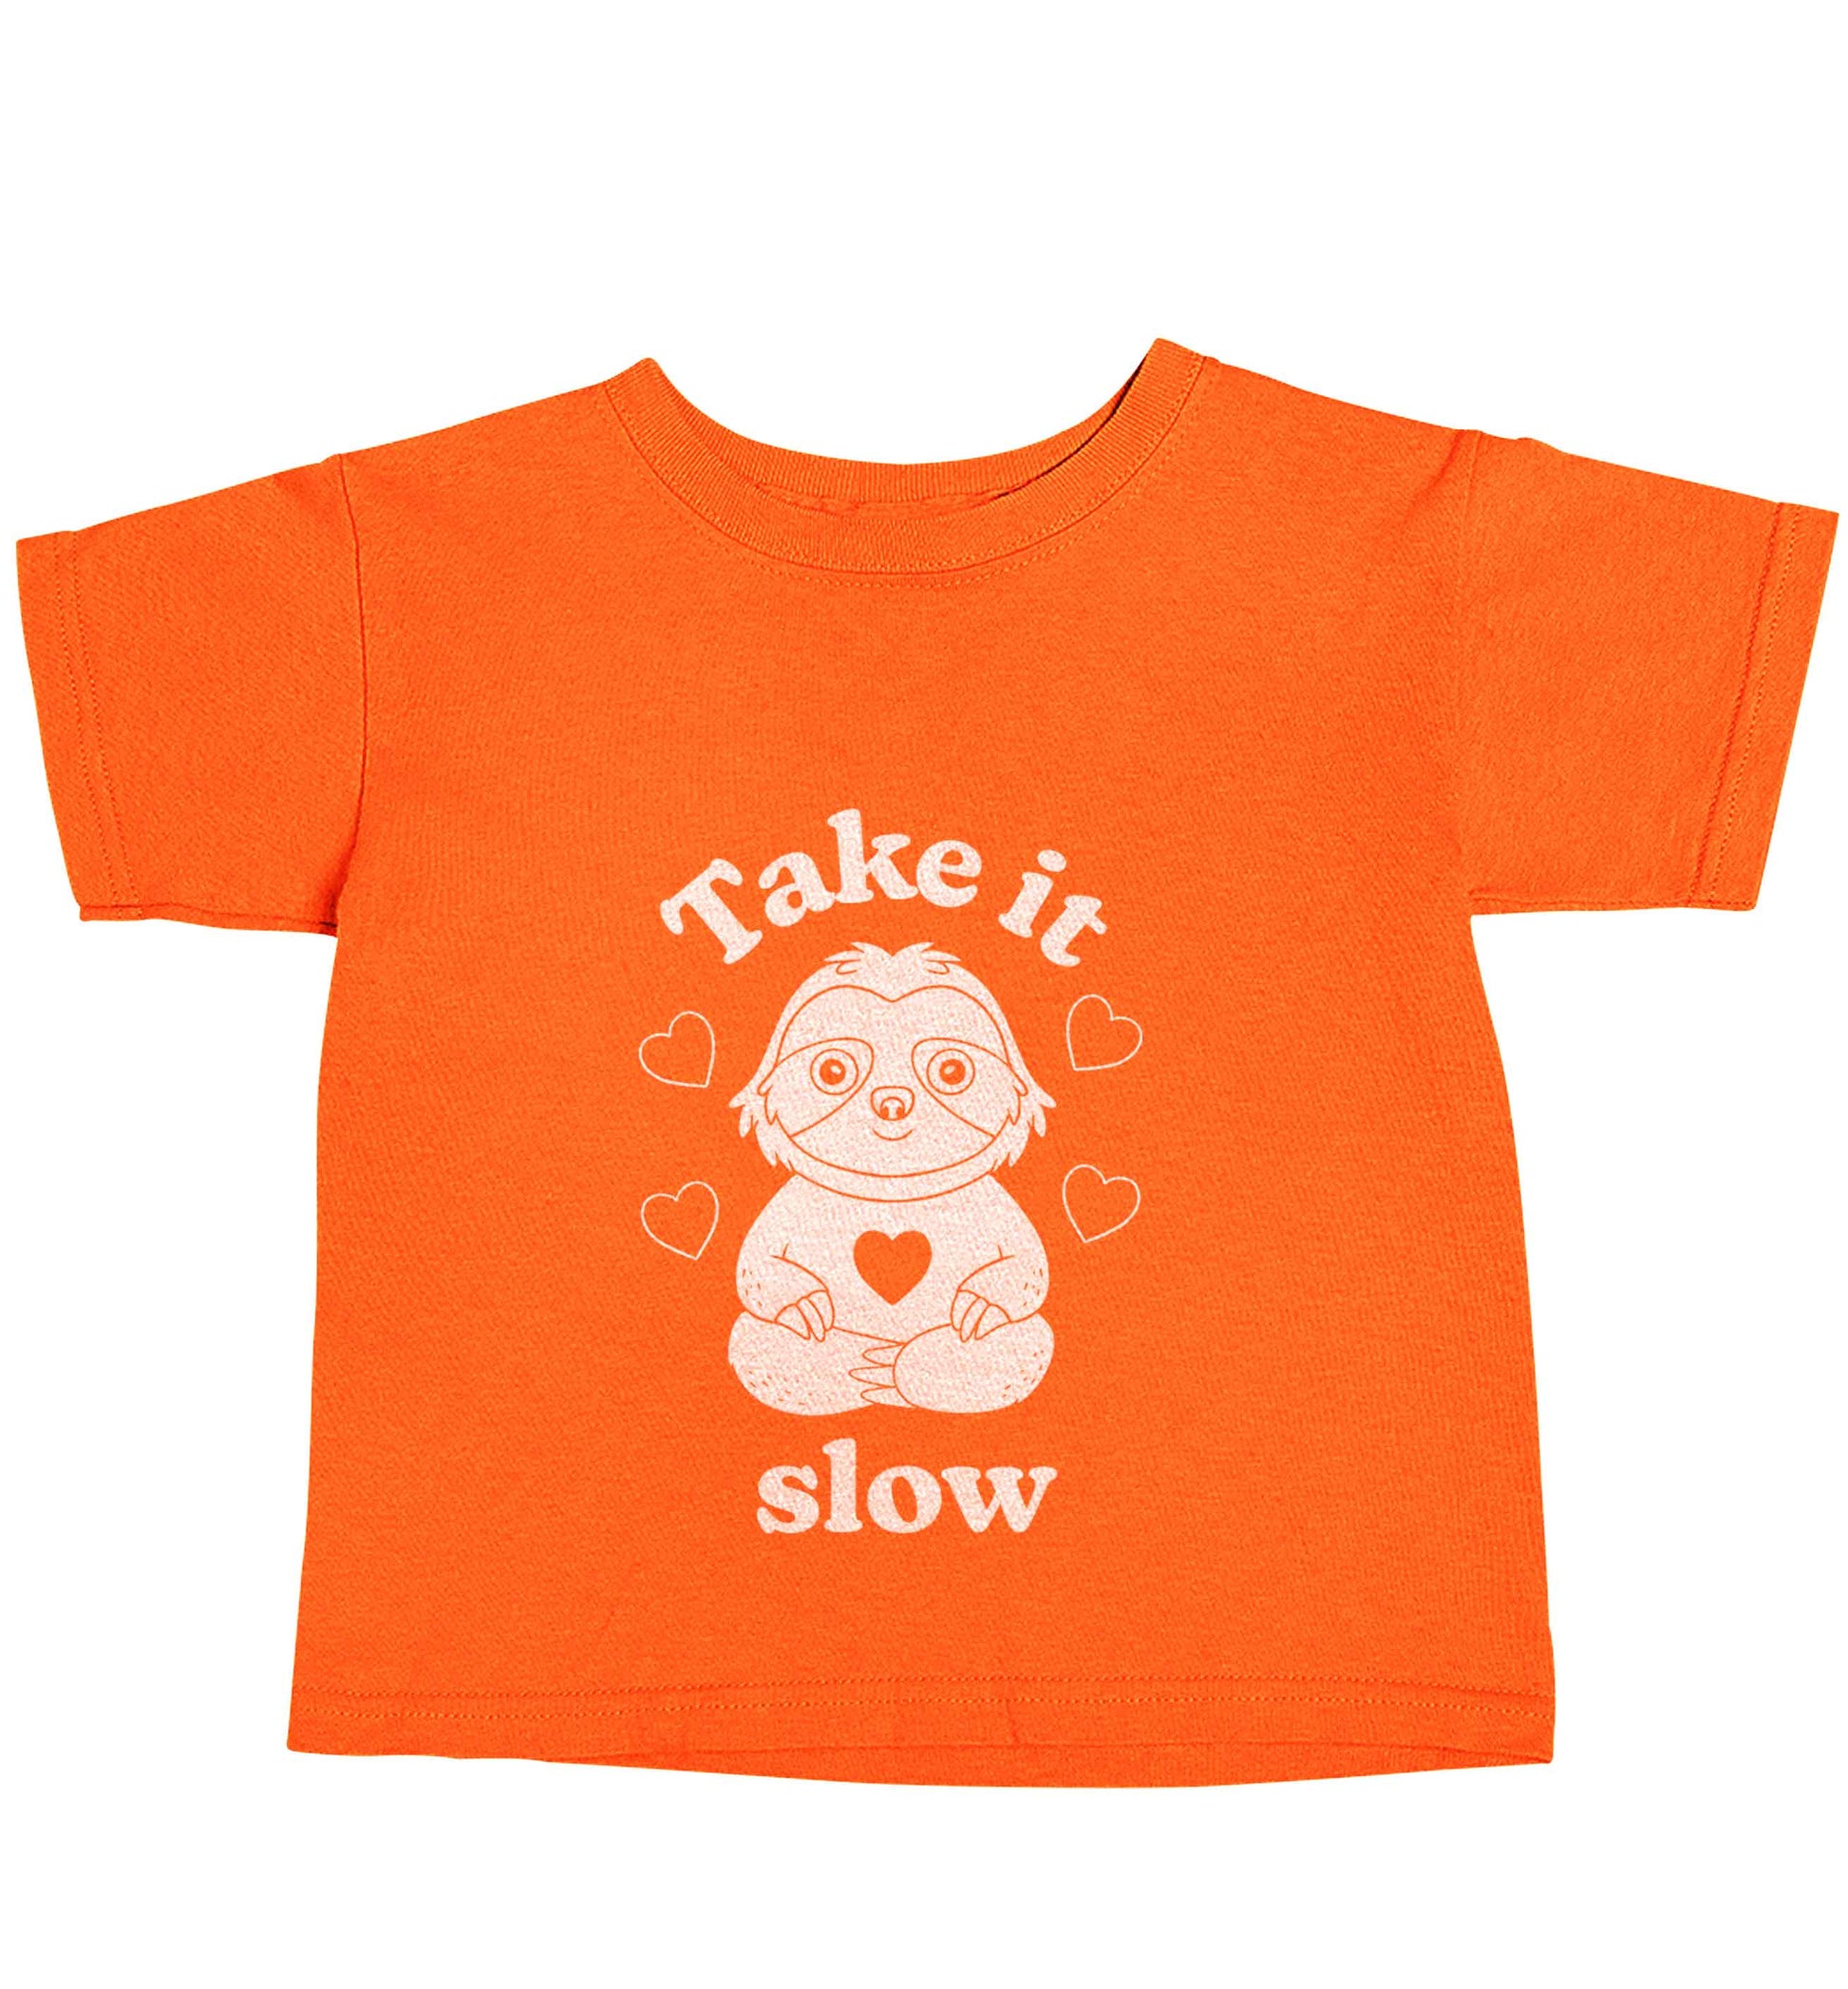 Take it slow orange baby toddler Tshirt 2 Years